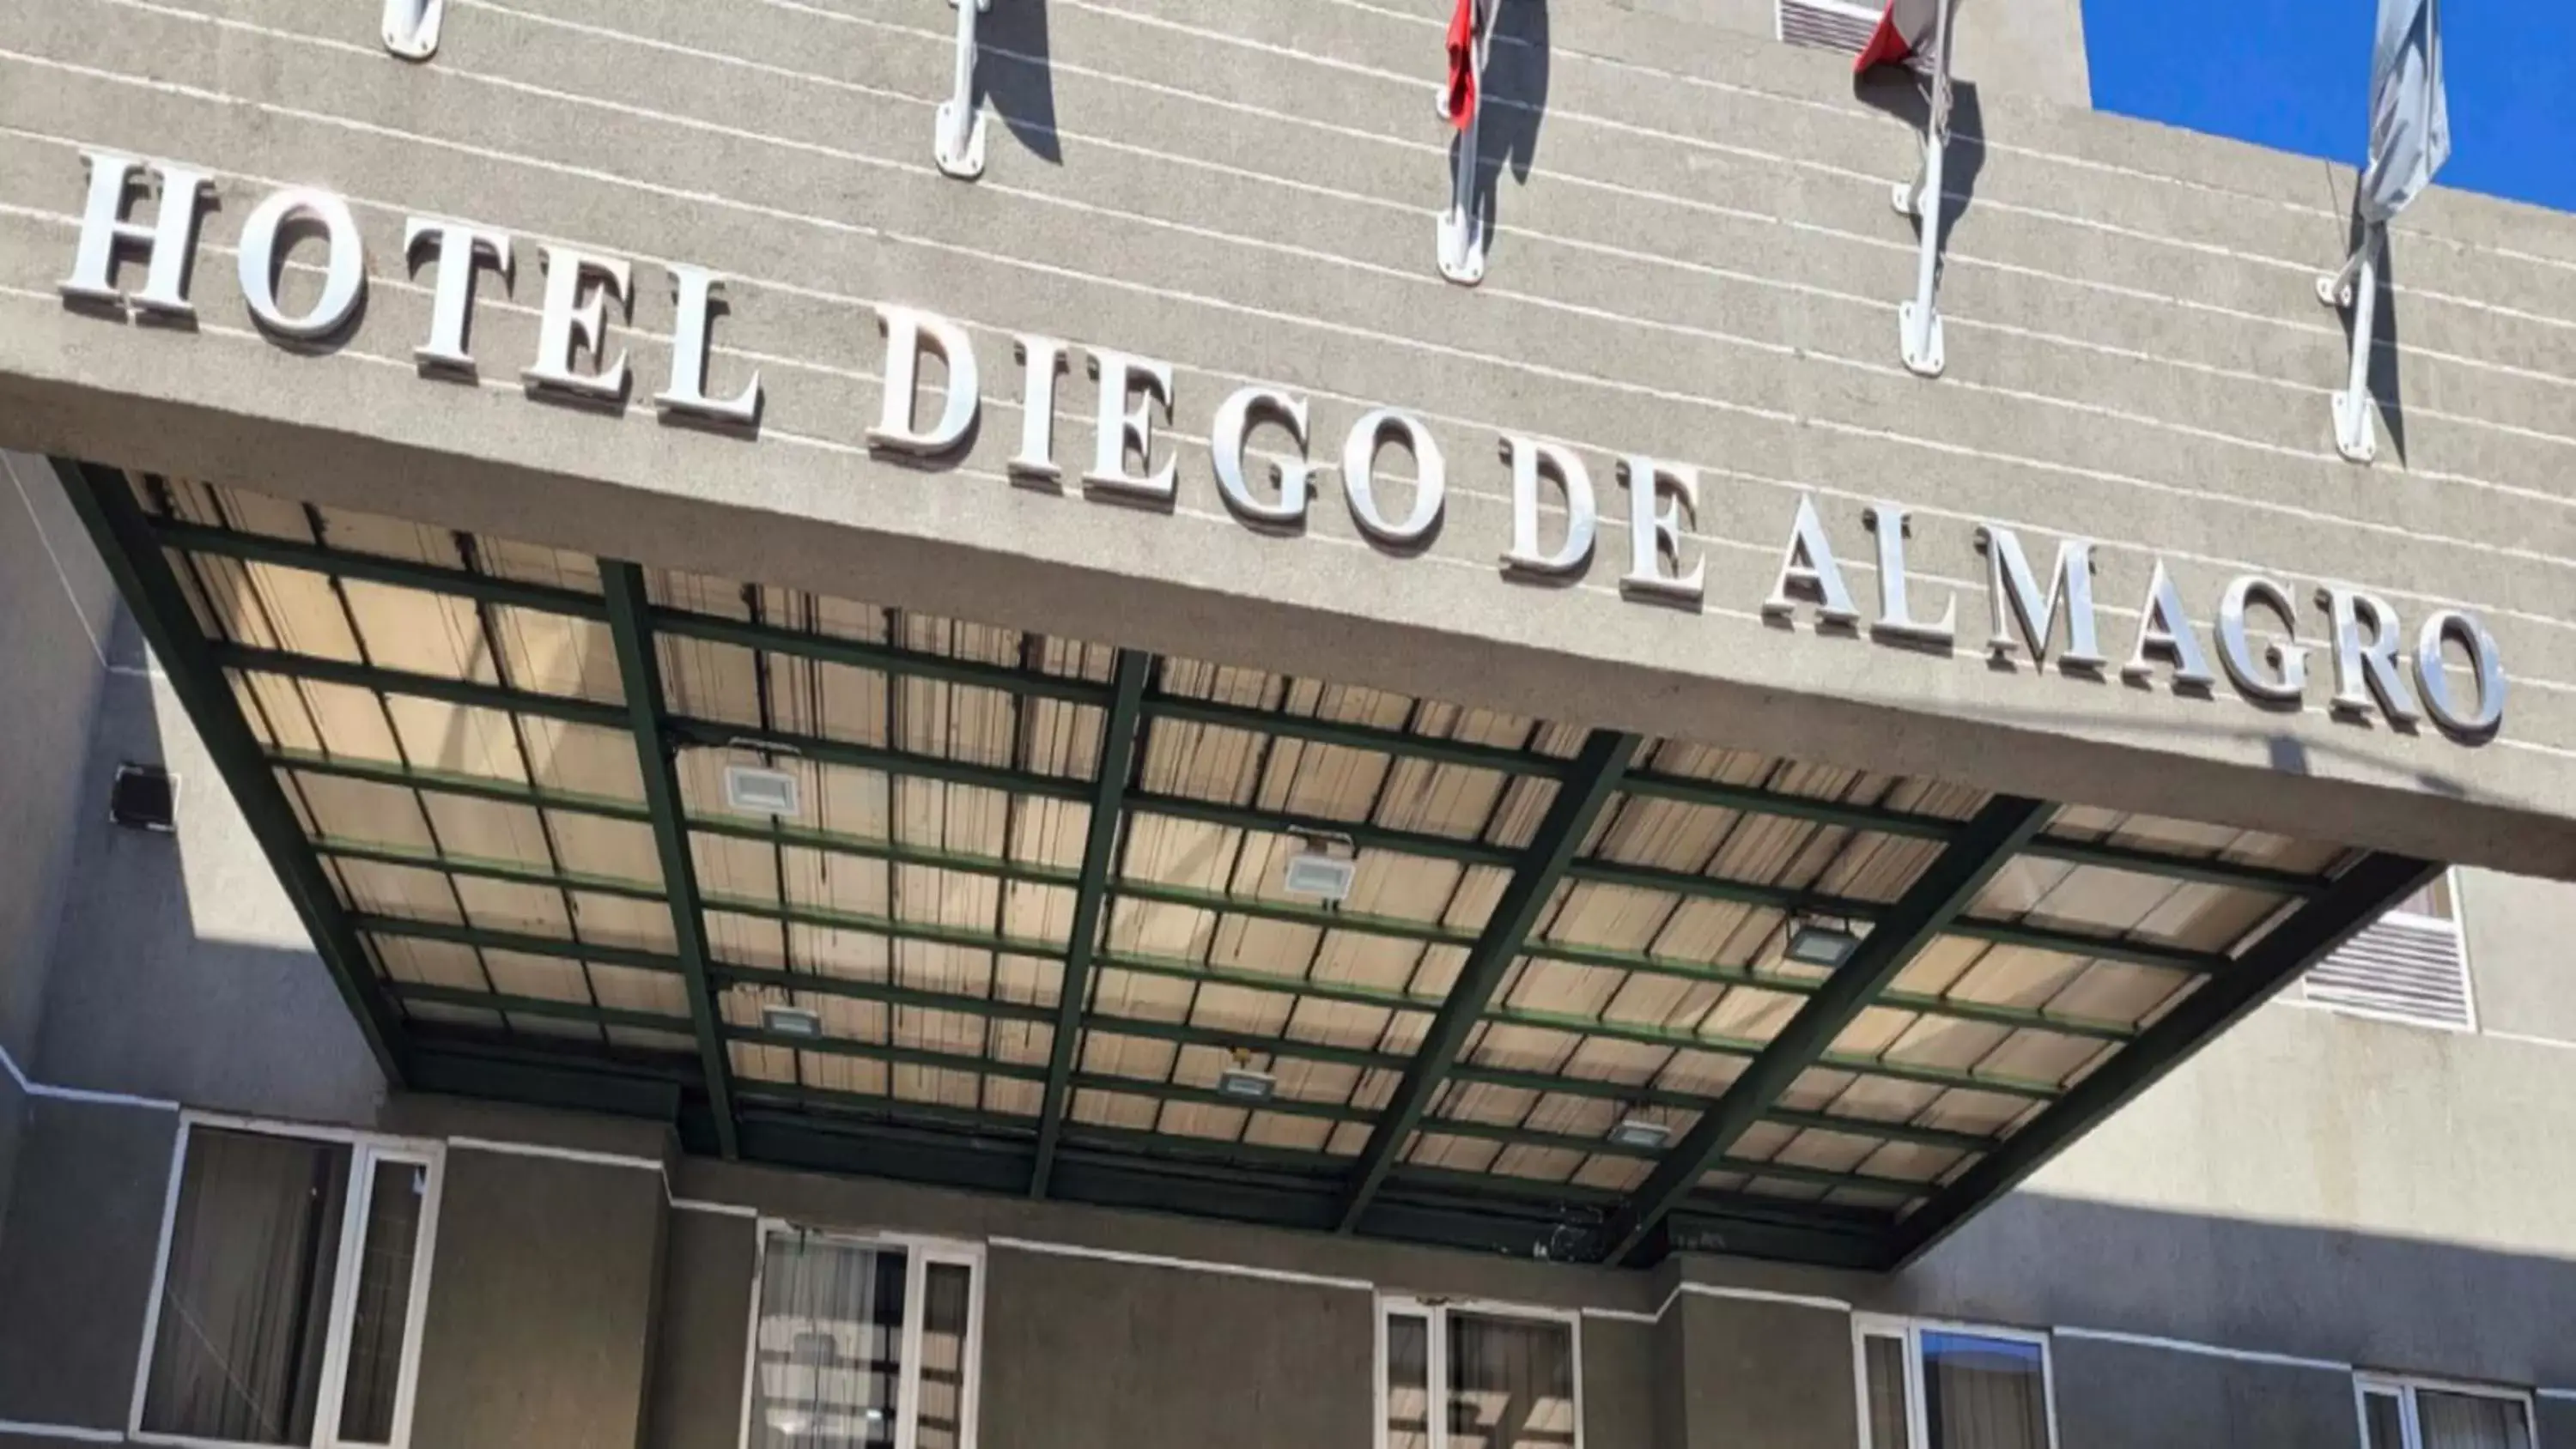 Property building in Hotel Diego De Almagro Rancagua